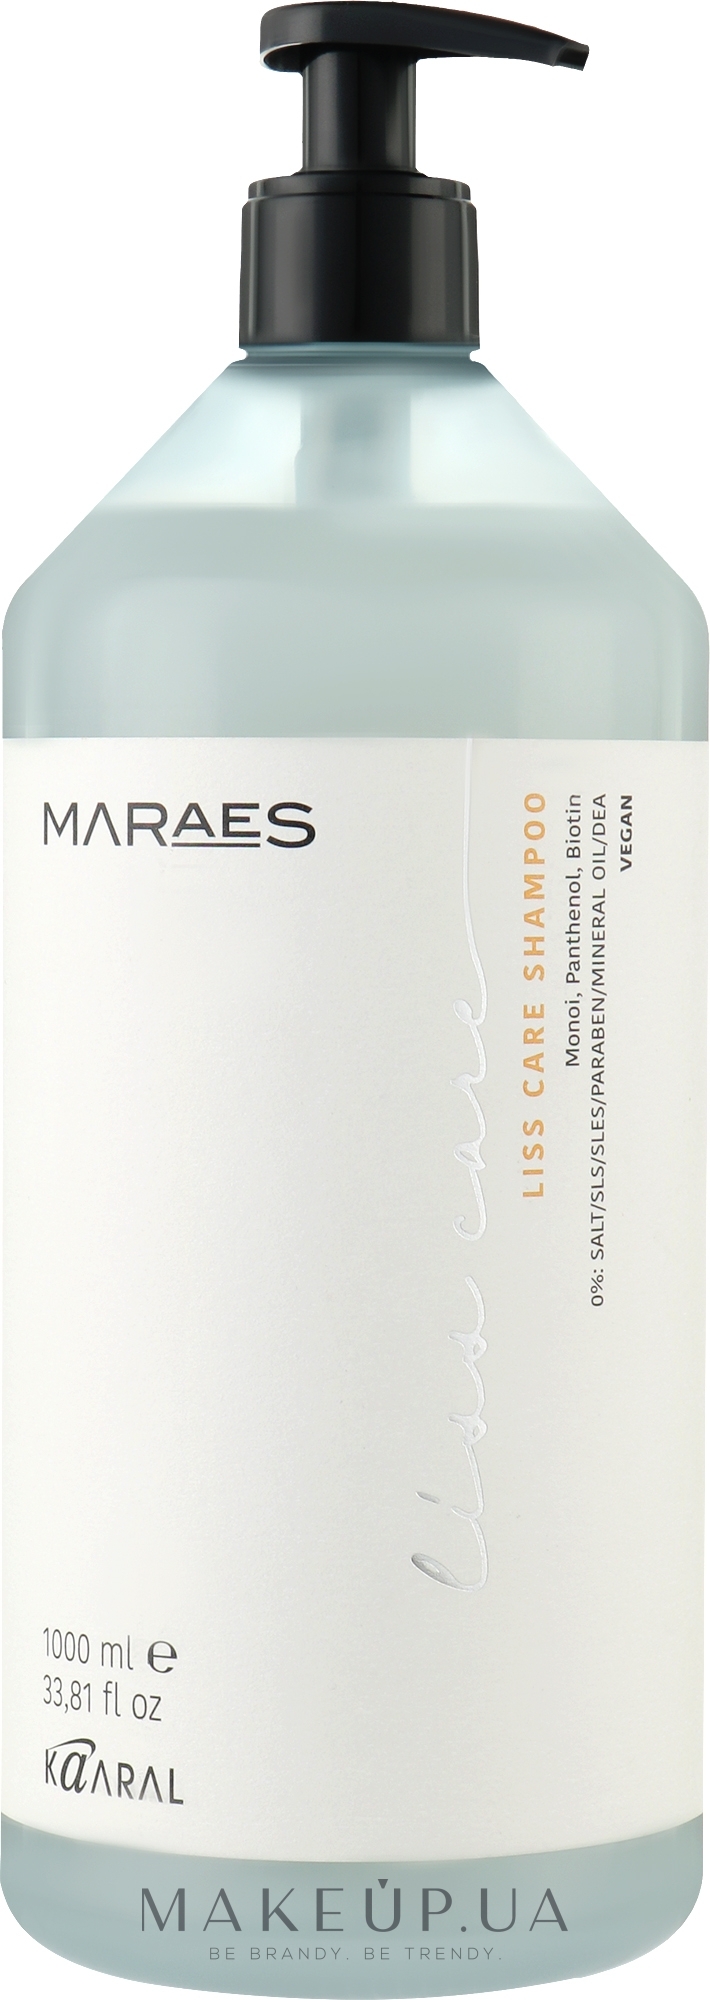 Шампунь для прямого волосся з пантенолом та біотином - Kaaral Maraes Liss Care Shampoo — фото 1000ml